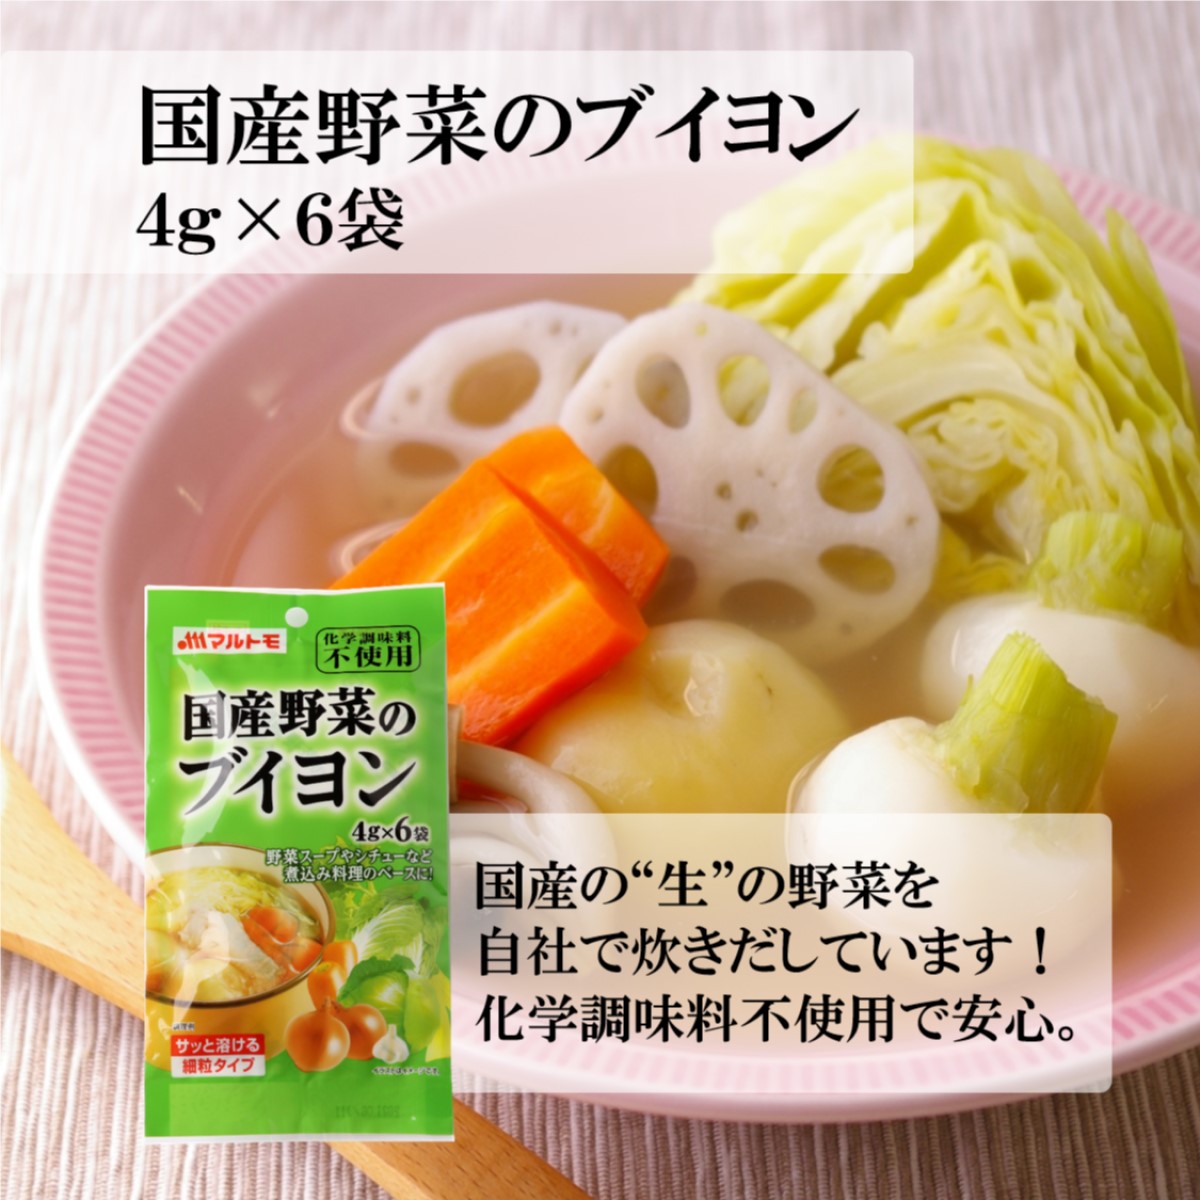 国産野菜のブイヨン 4g×6袋 使用例